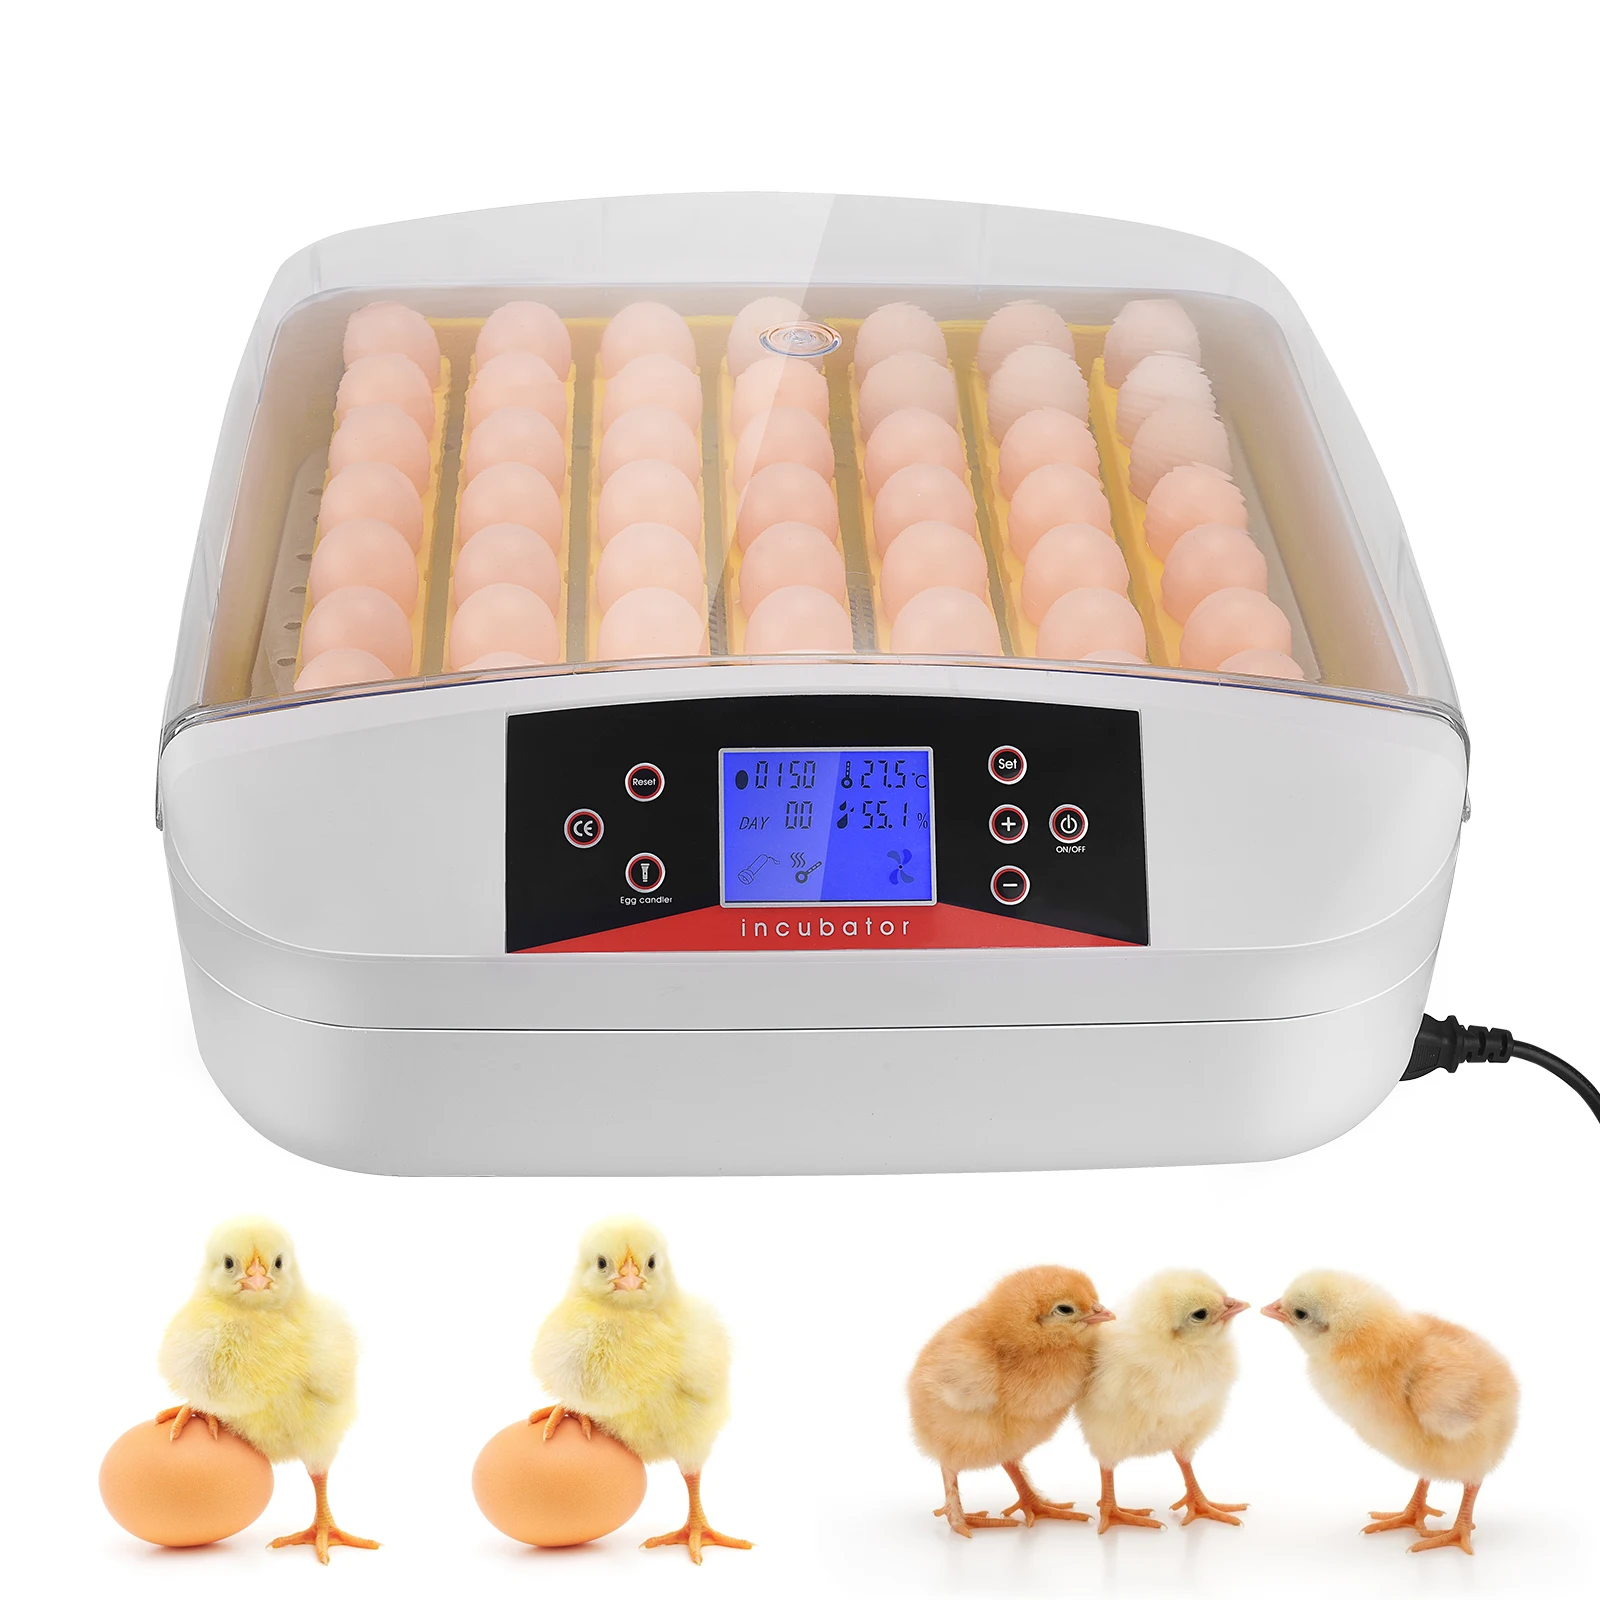 

Автоматический инкубатор для яиц, тестер с нижним освещением, автоматический поворот яиц, контроль температуры и отображение дней инкубаци...